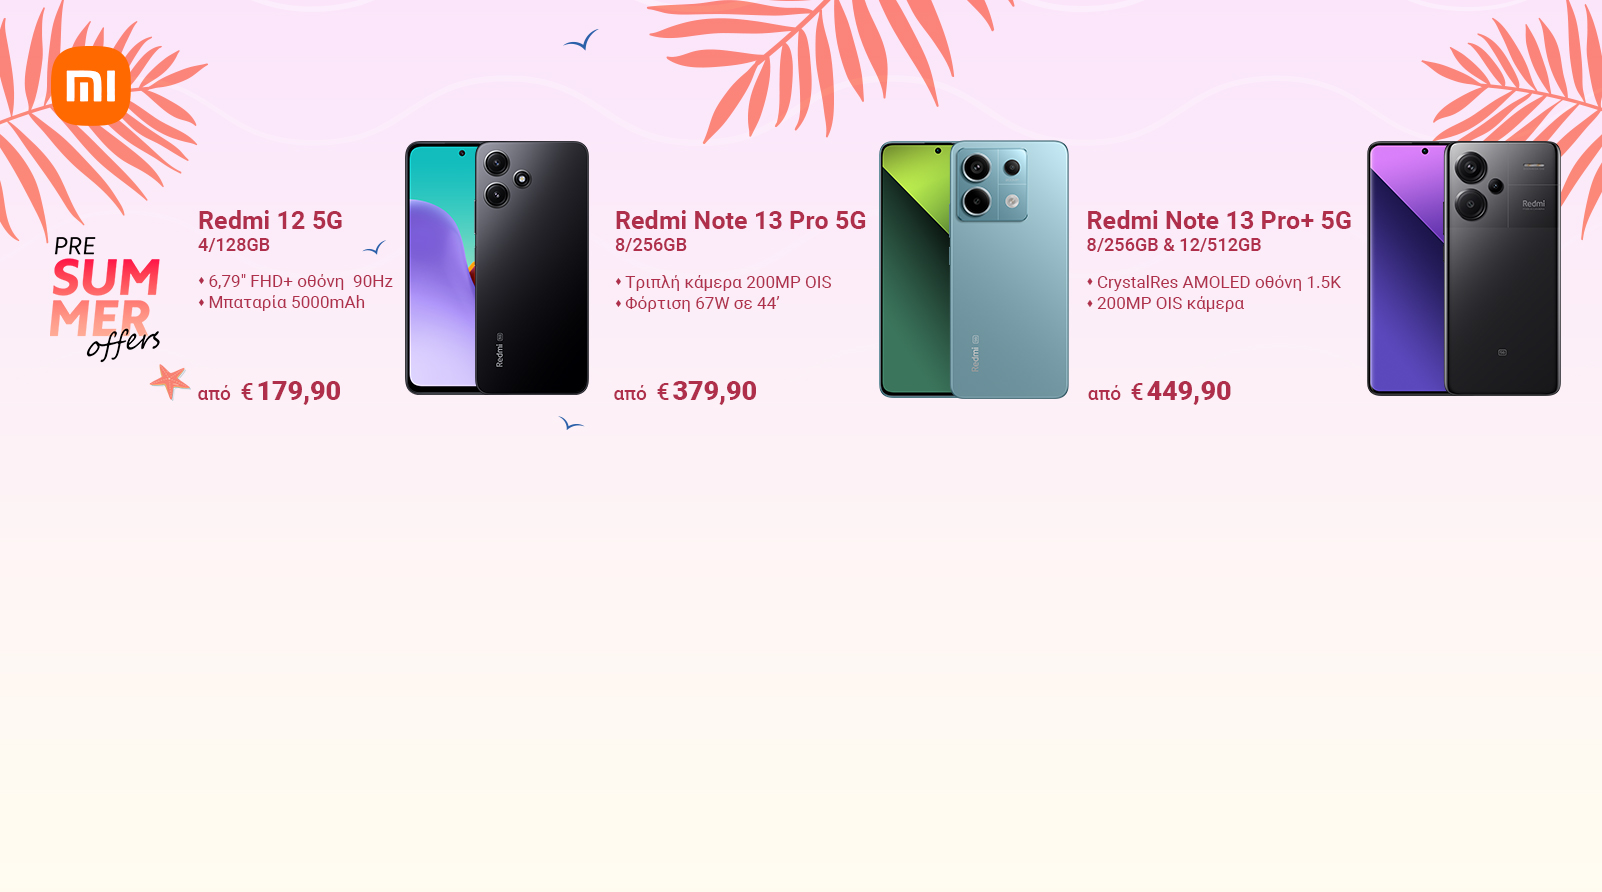 Xiaomi Pre-Summer Offers